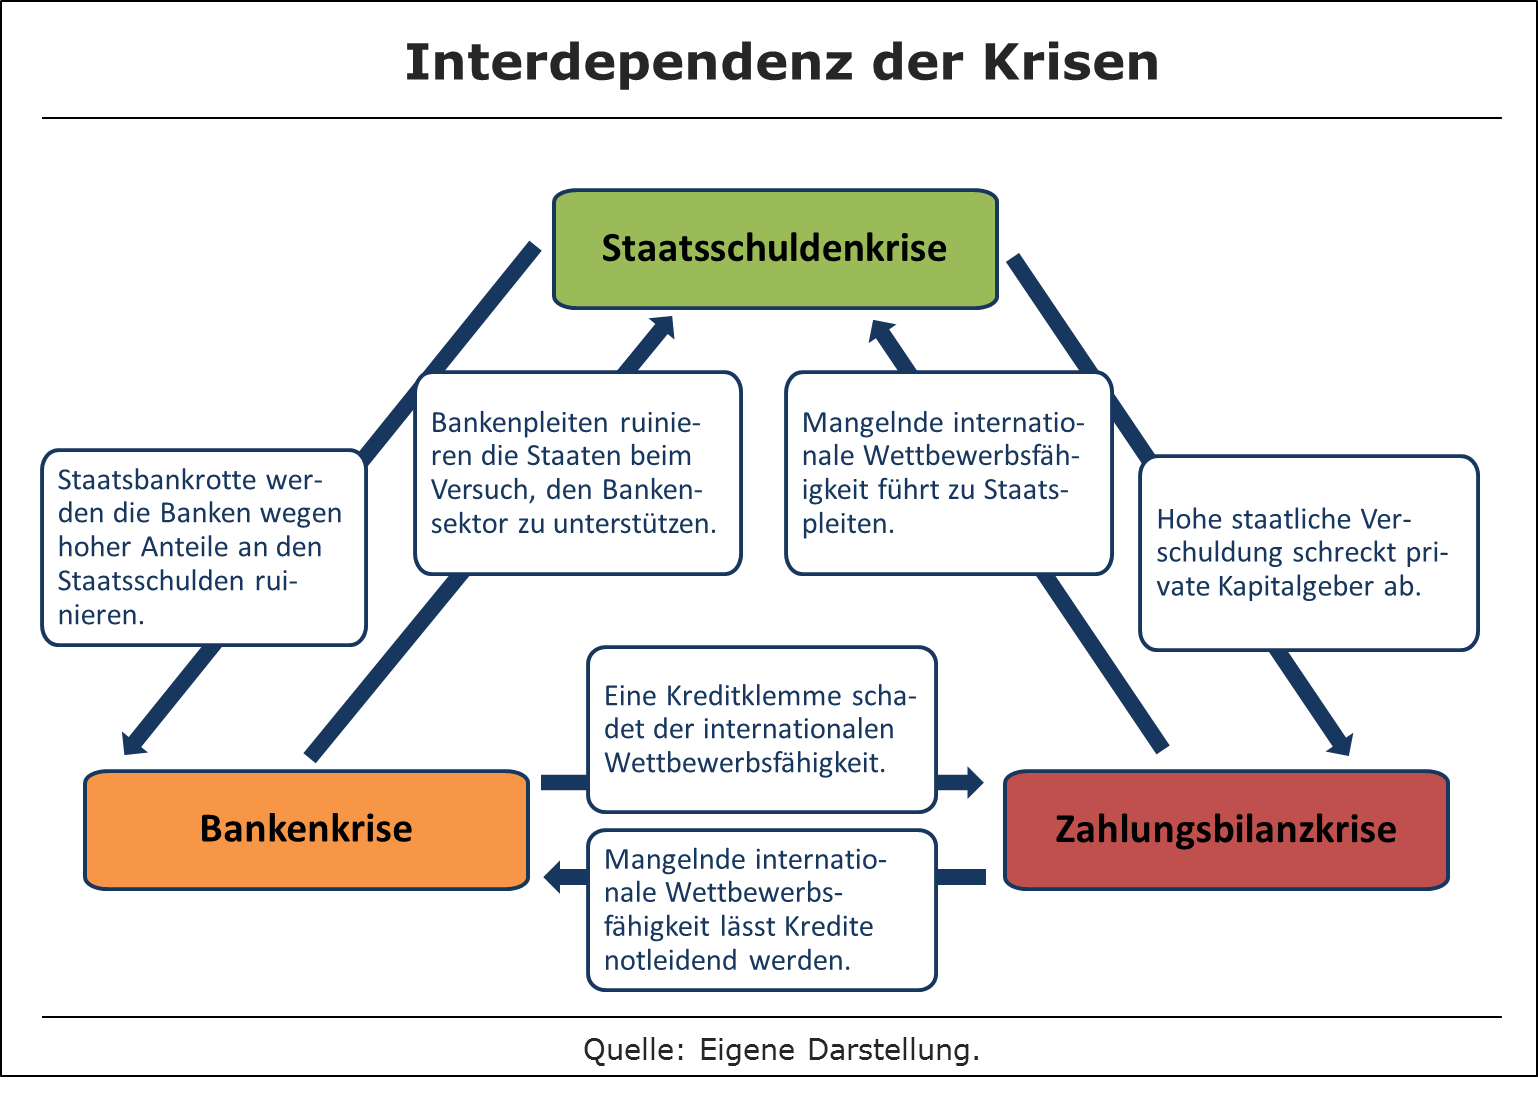 Interdependenz der Krisen